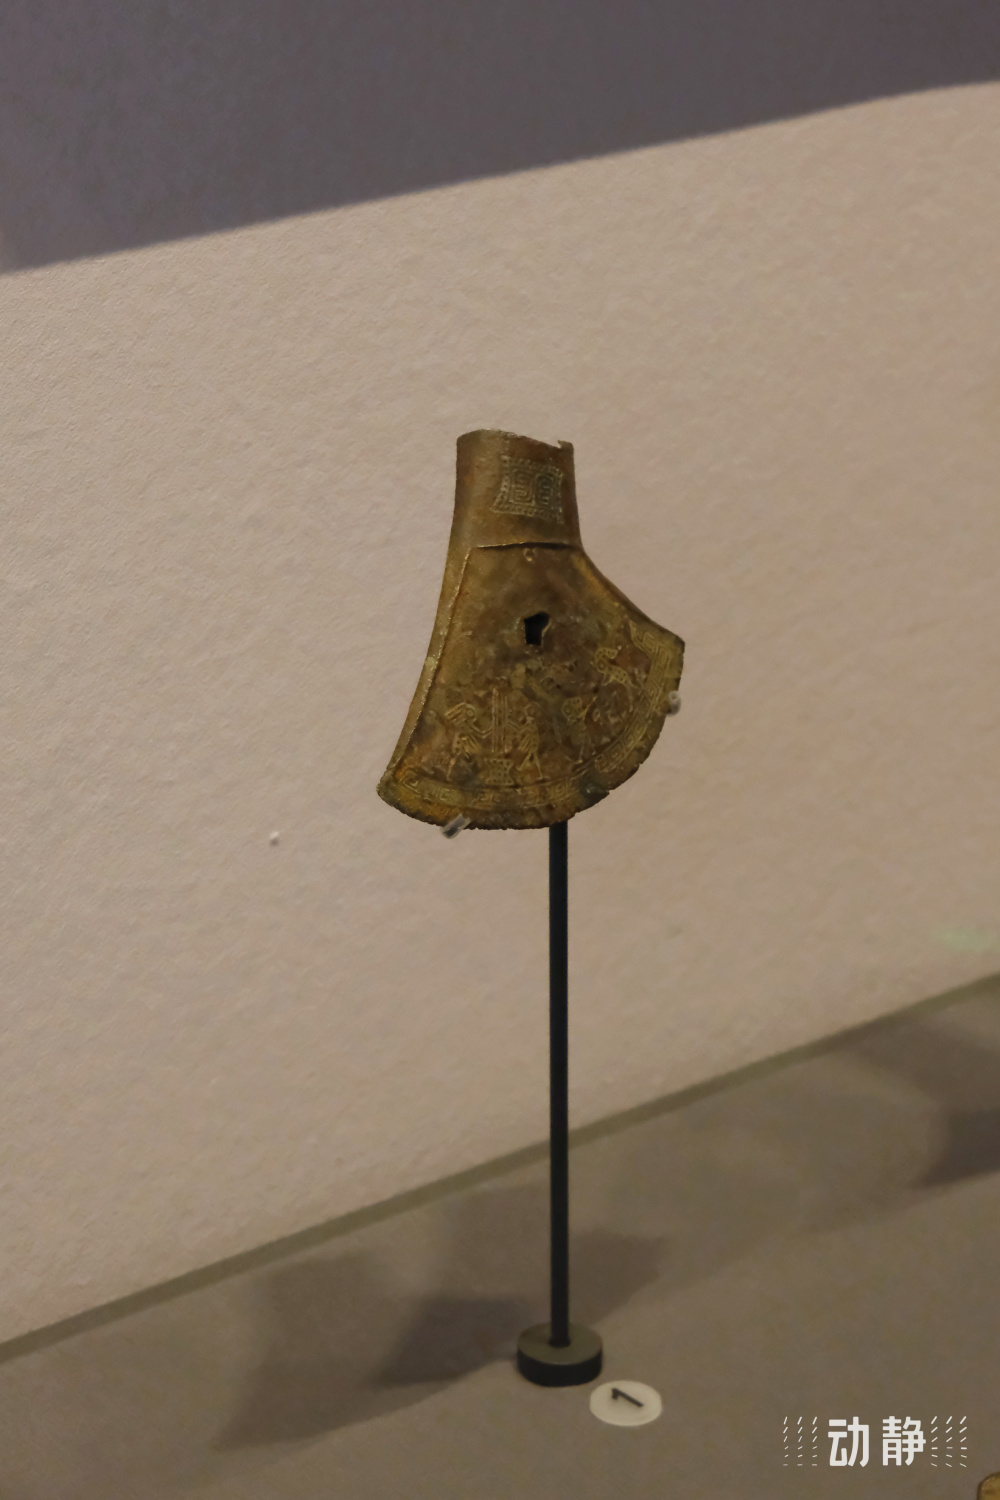 穿越30万年的贵州丨有着双重身份的千年文物:战国铜钺